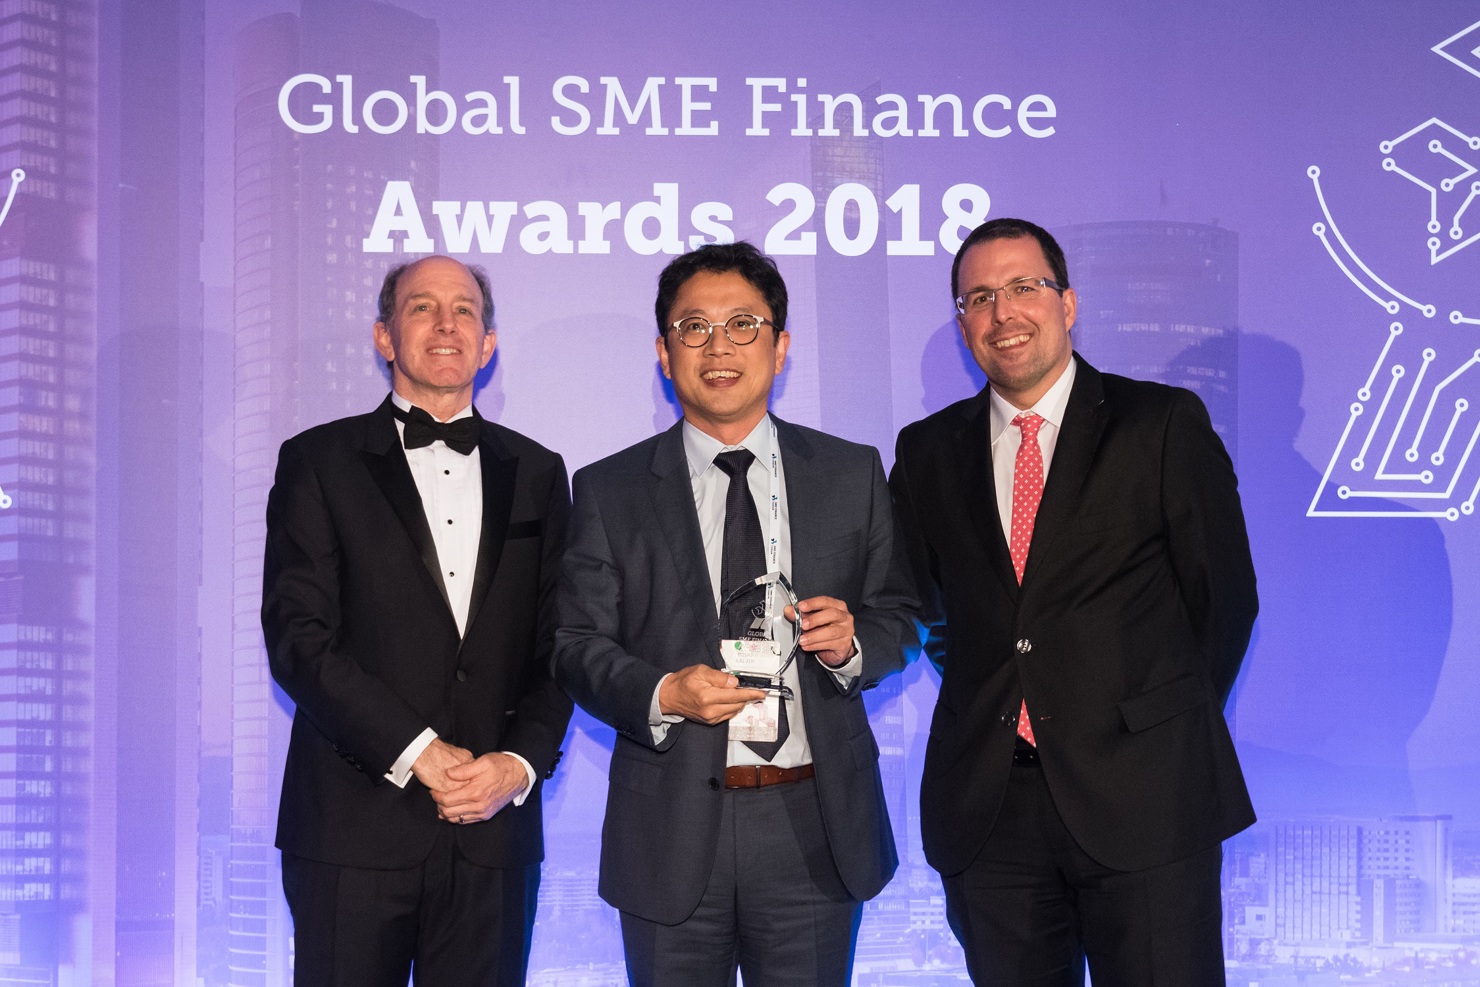 Ông Fung Kai Jin, Phó Tổng giám đốc kiêm Giám đốc Khối SME, VPBank (đứng giữa) nhận giải thưởng.